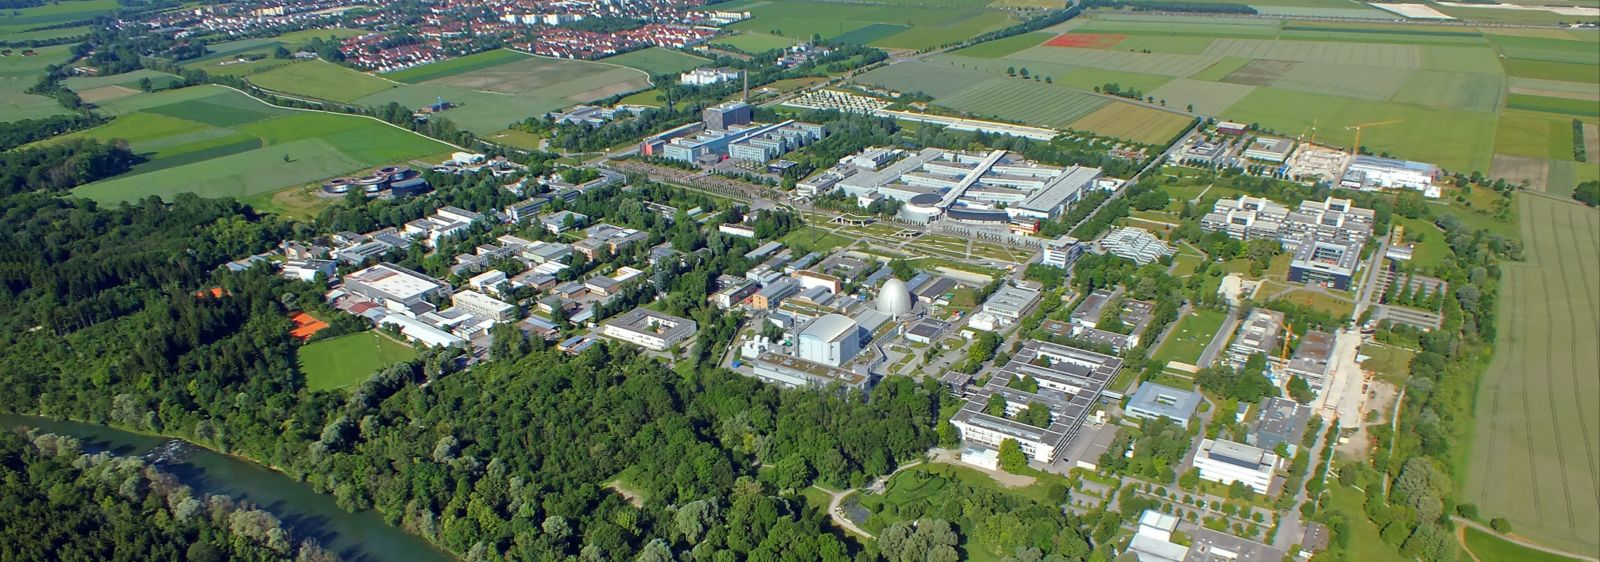 Der Campus der Technischen Universität München in Garching, mit der Stadt Garching im Hintergrund